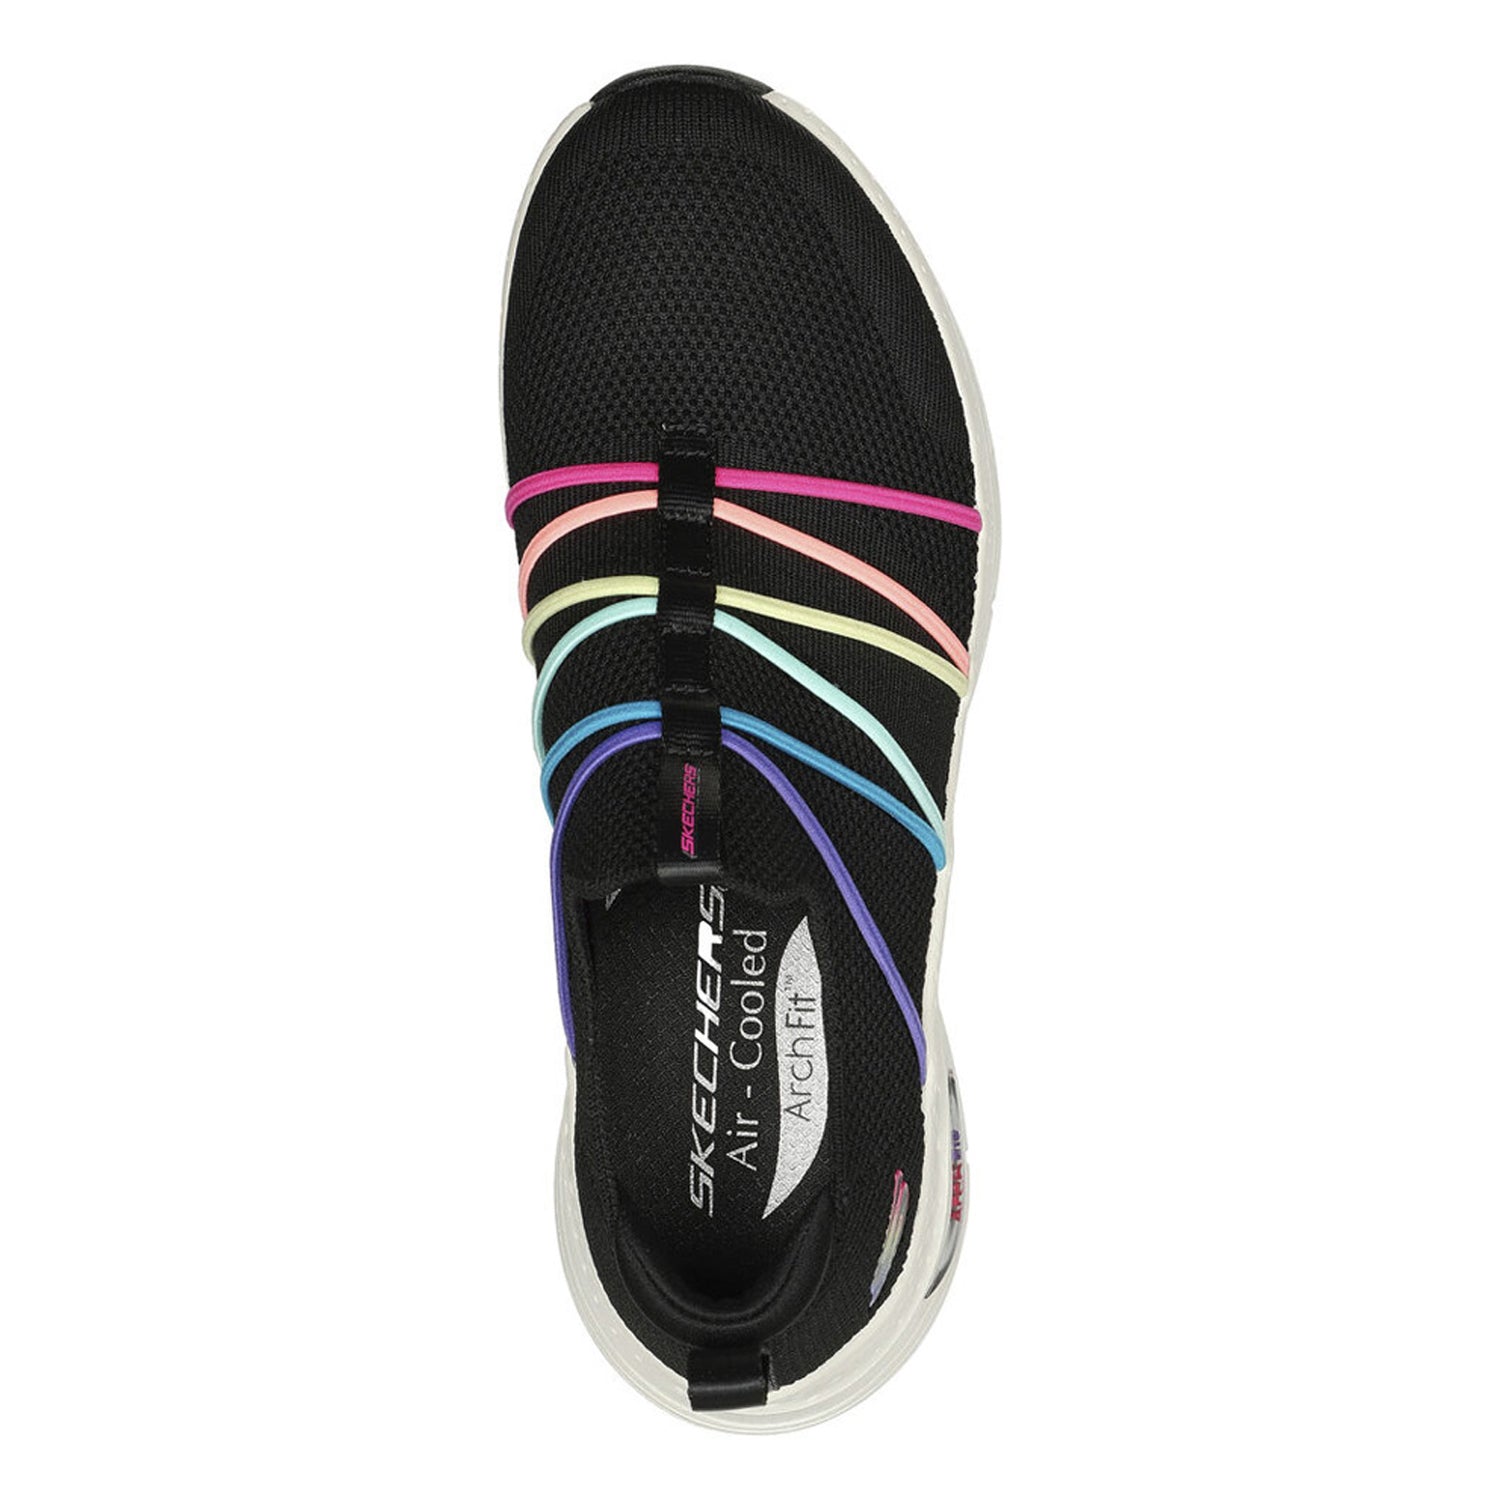 Peltz Shoes  Women's Skechers Arch Fit - Bright Side Sneaker BLACK 149565-BKMT